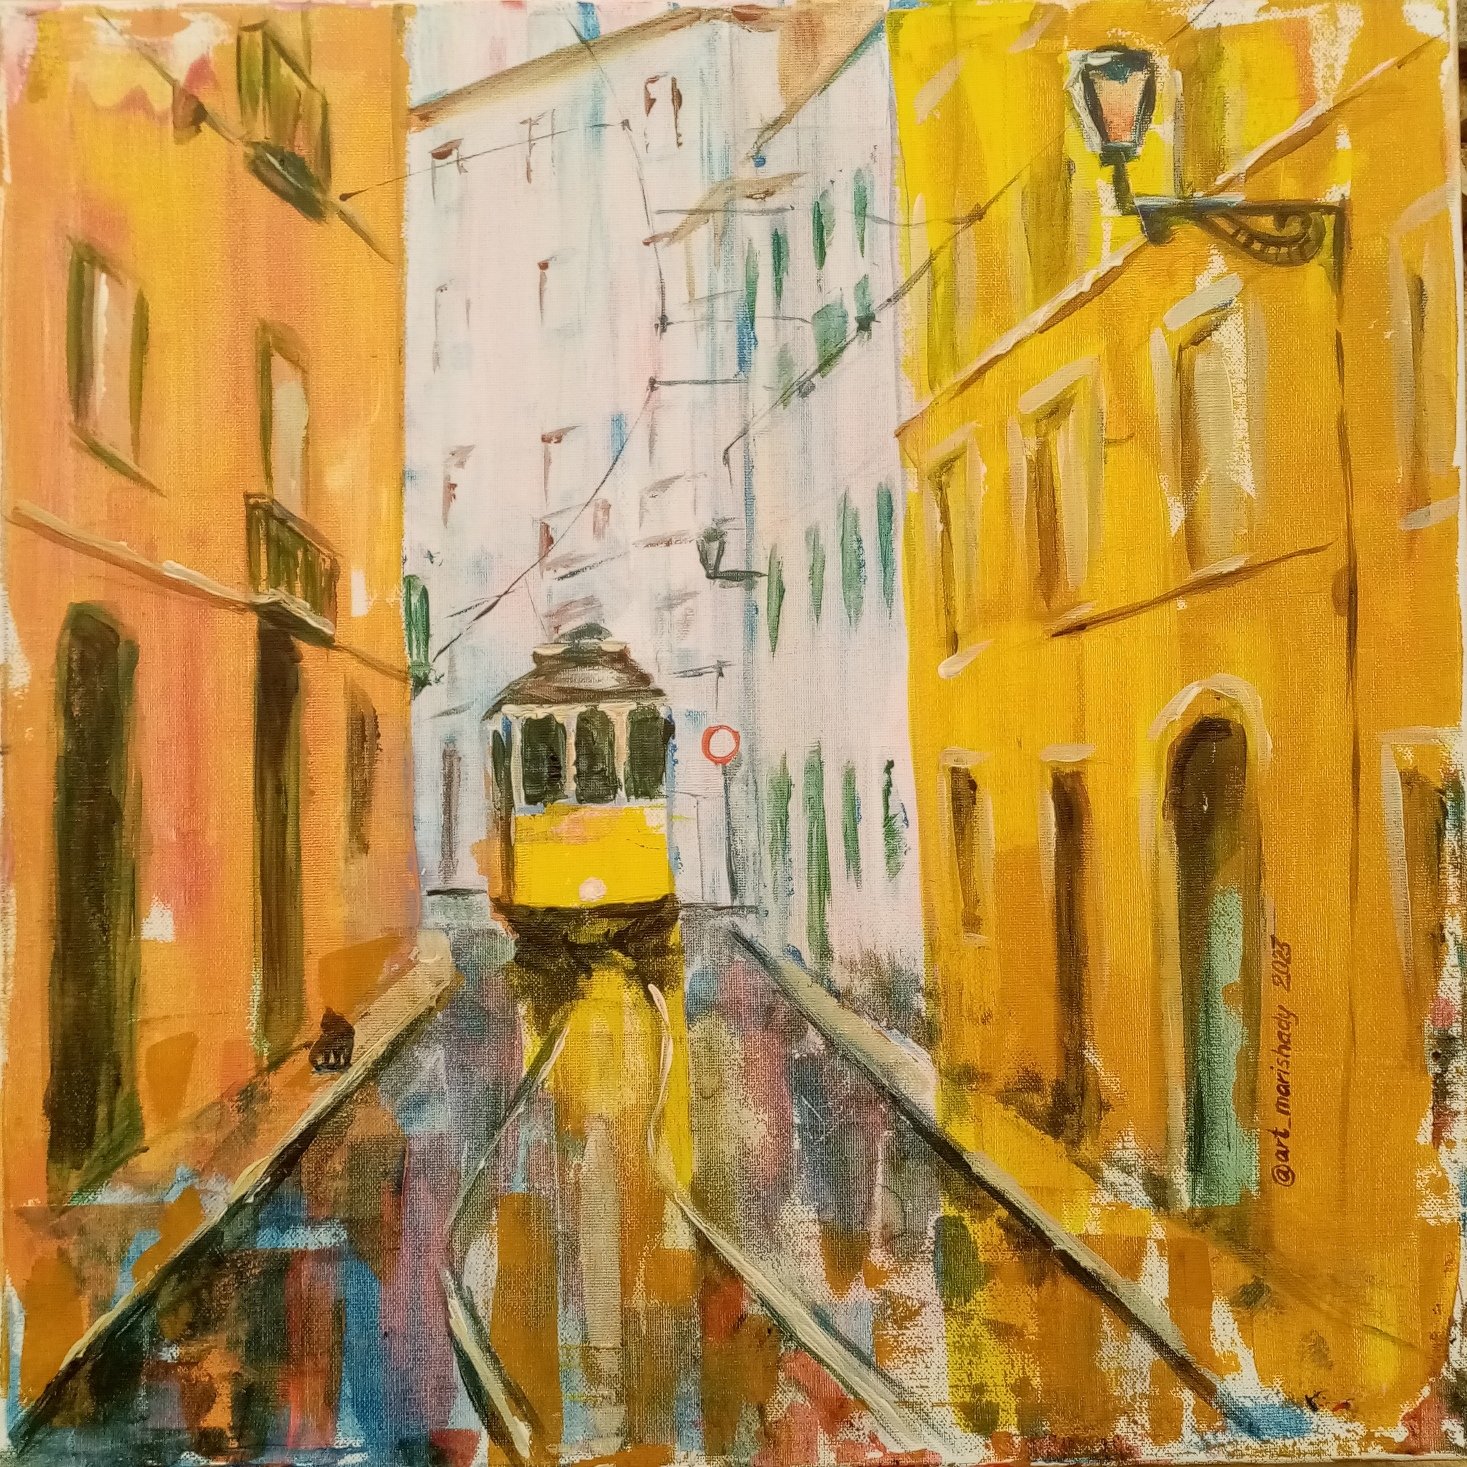 The Yellow Tram by Marina Diachkova